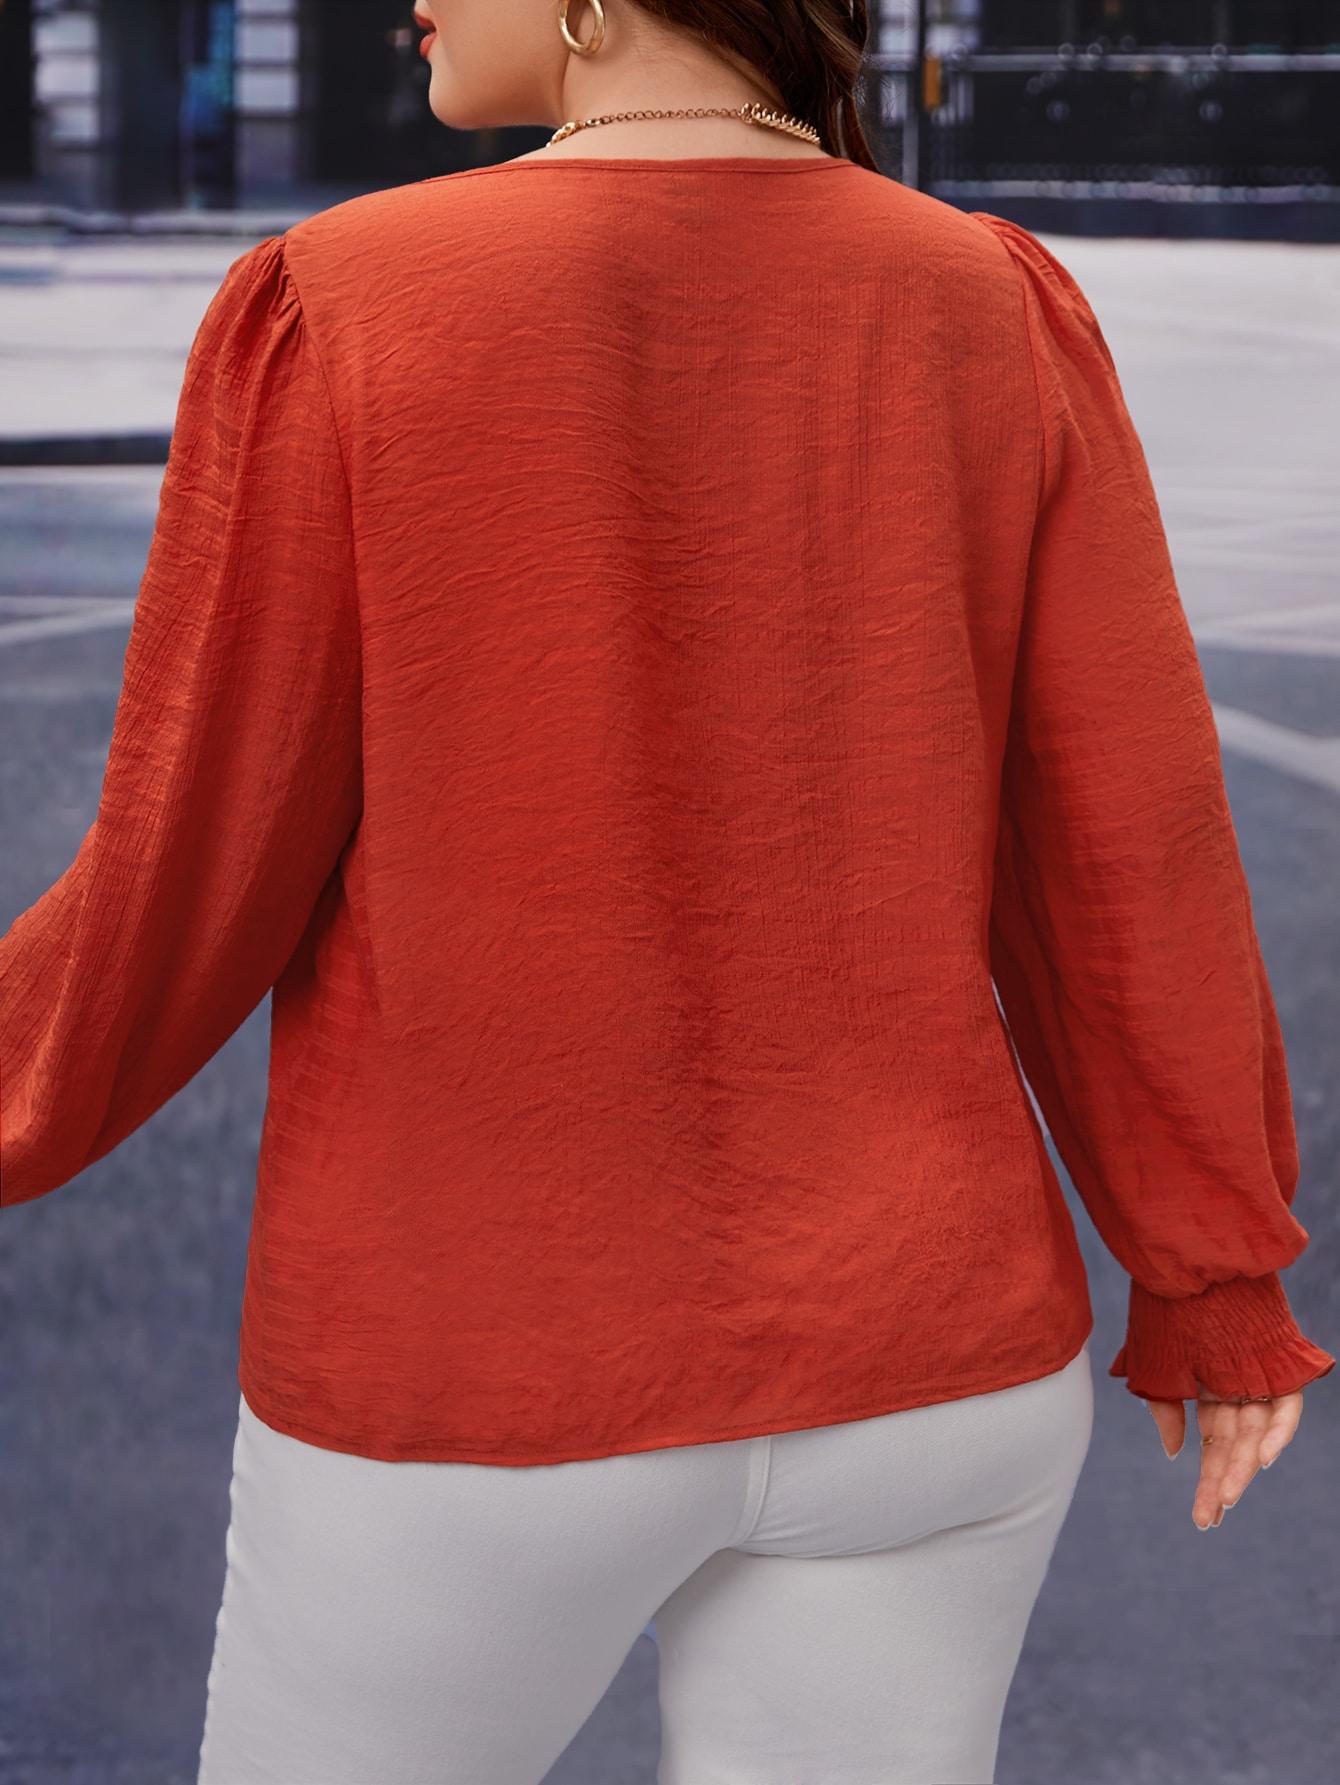 pomarańczowa luźna bluzka długi rękaw 